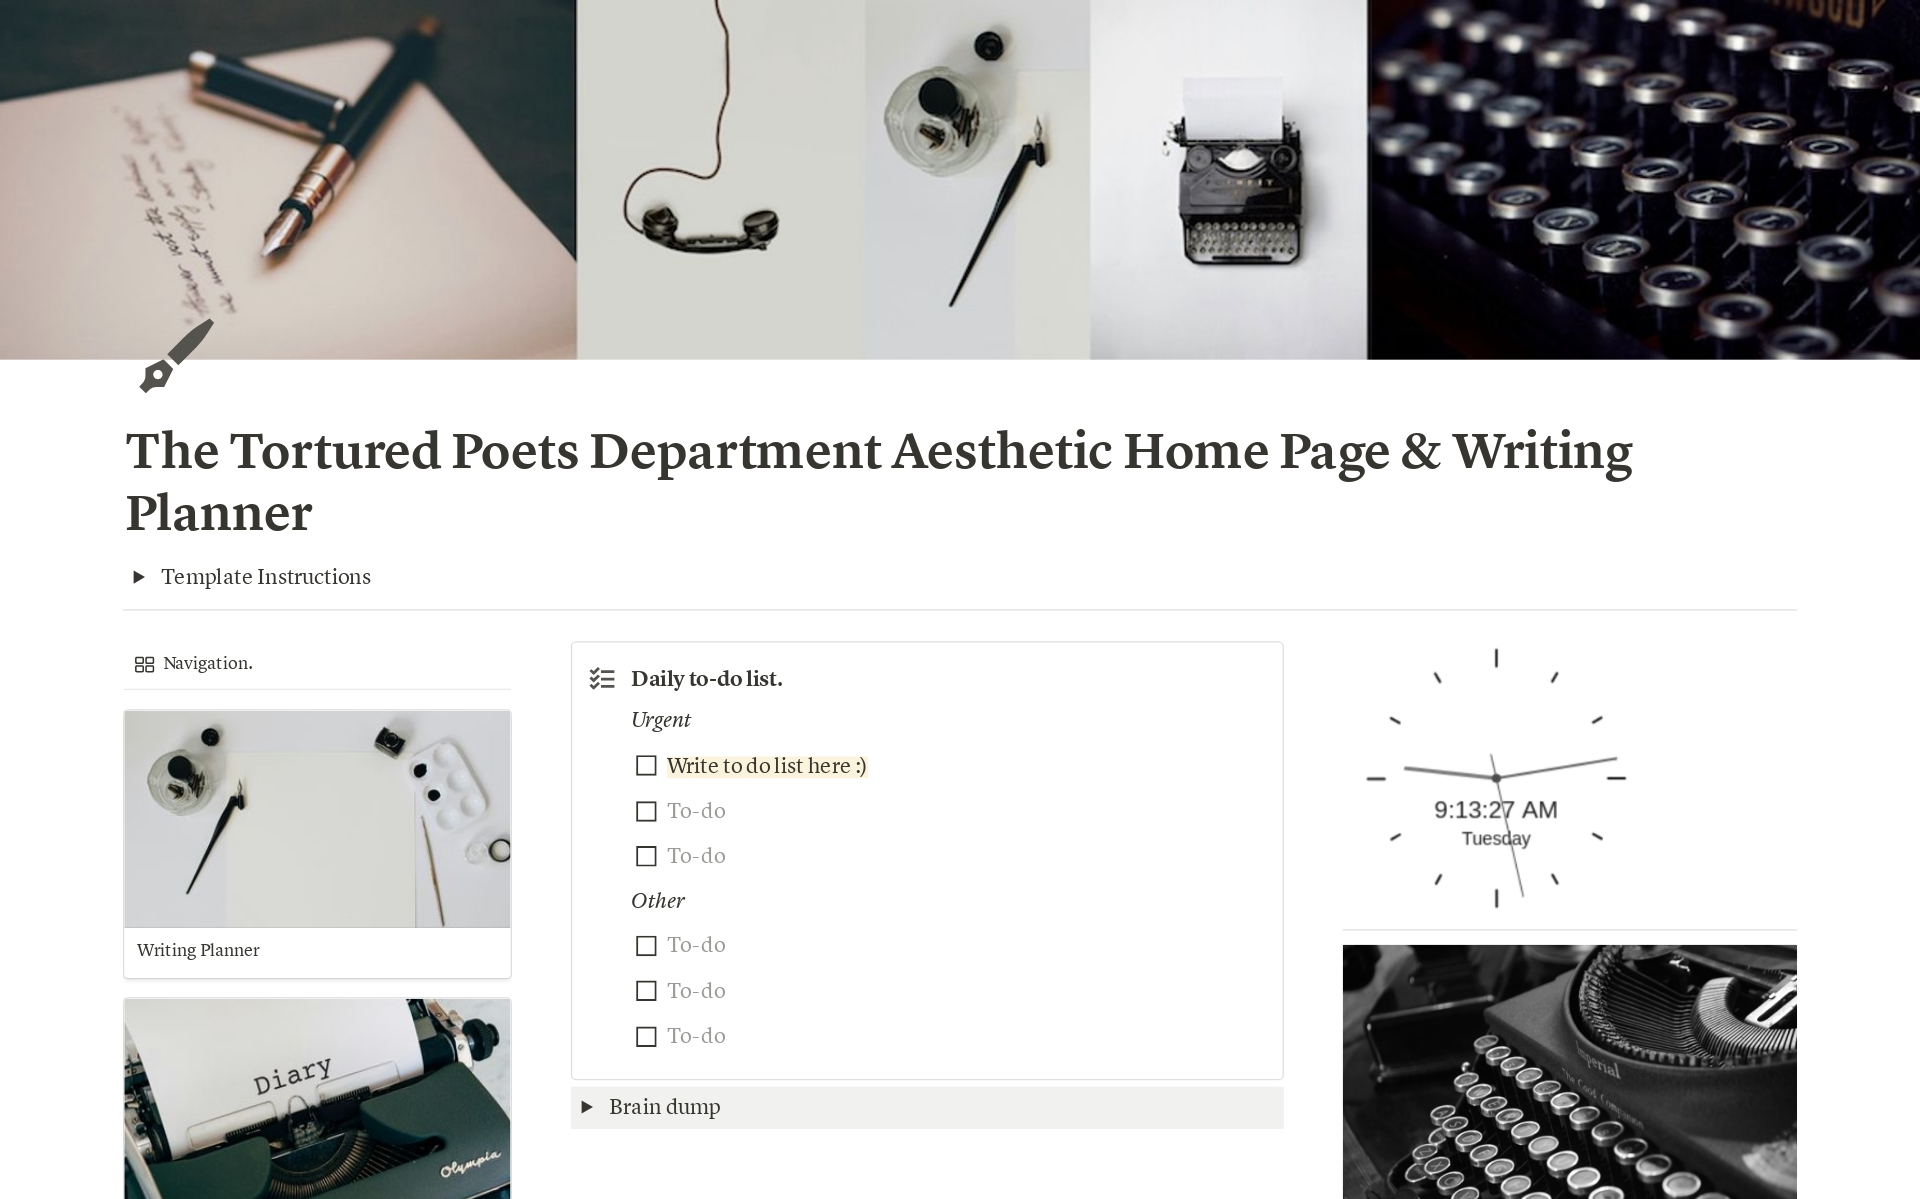 Uma prévia do modelo para The Tortured Poets Department Aesthetic Home Page